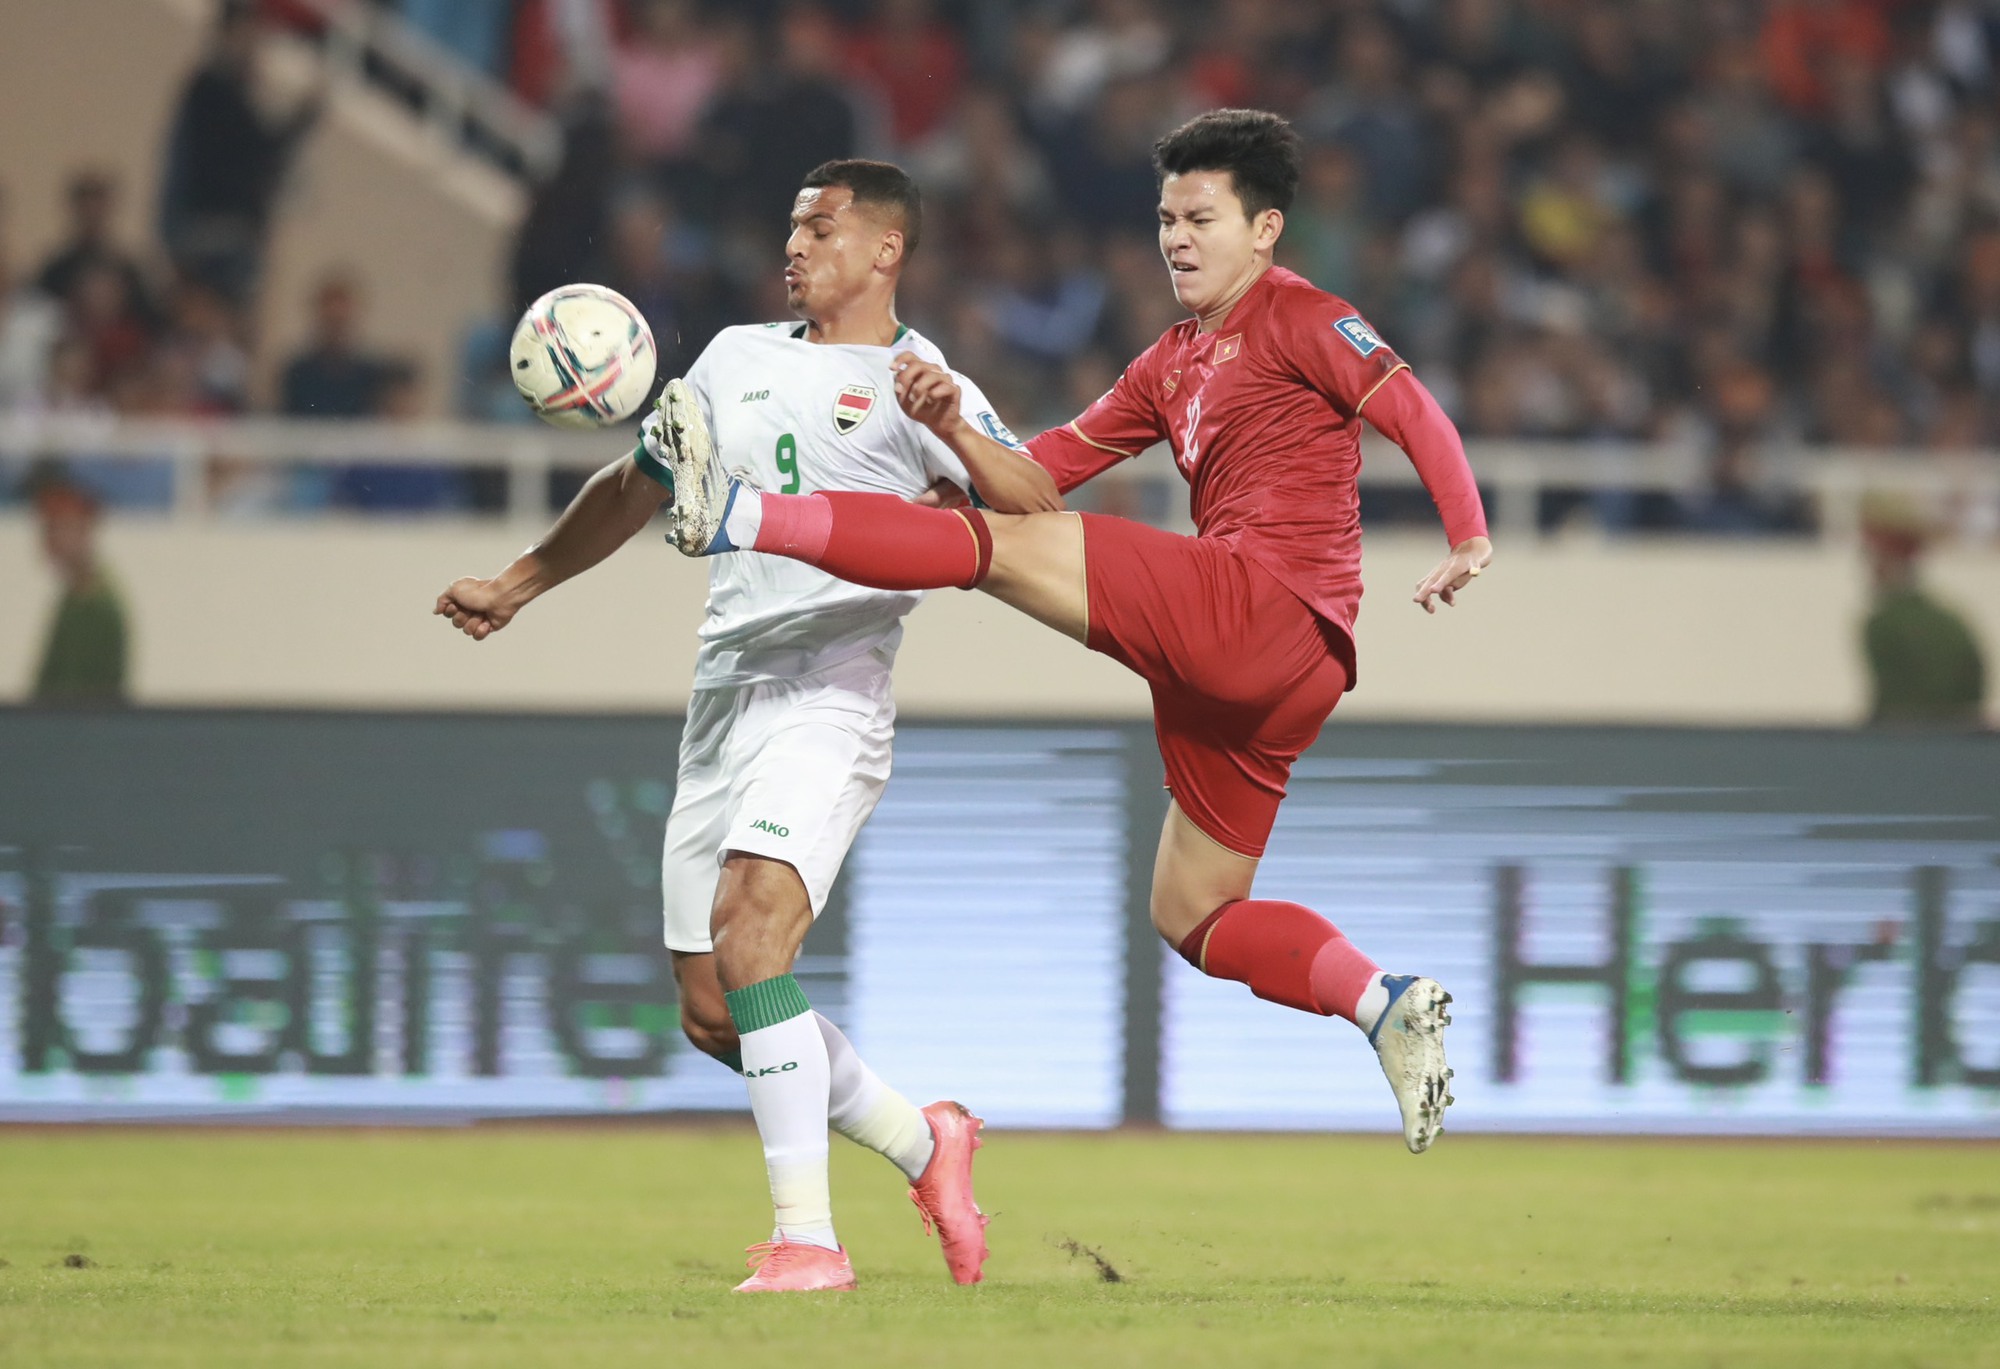 'Vé đến Olympic hiếm hơn dự World Cup', cơ hội nào cho U.23 Việt Nam? - Ảnh 2.